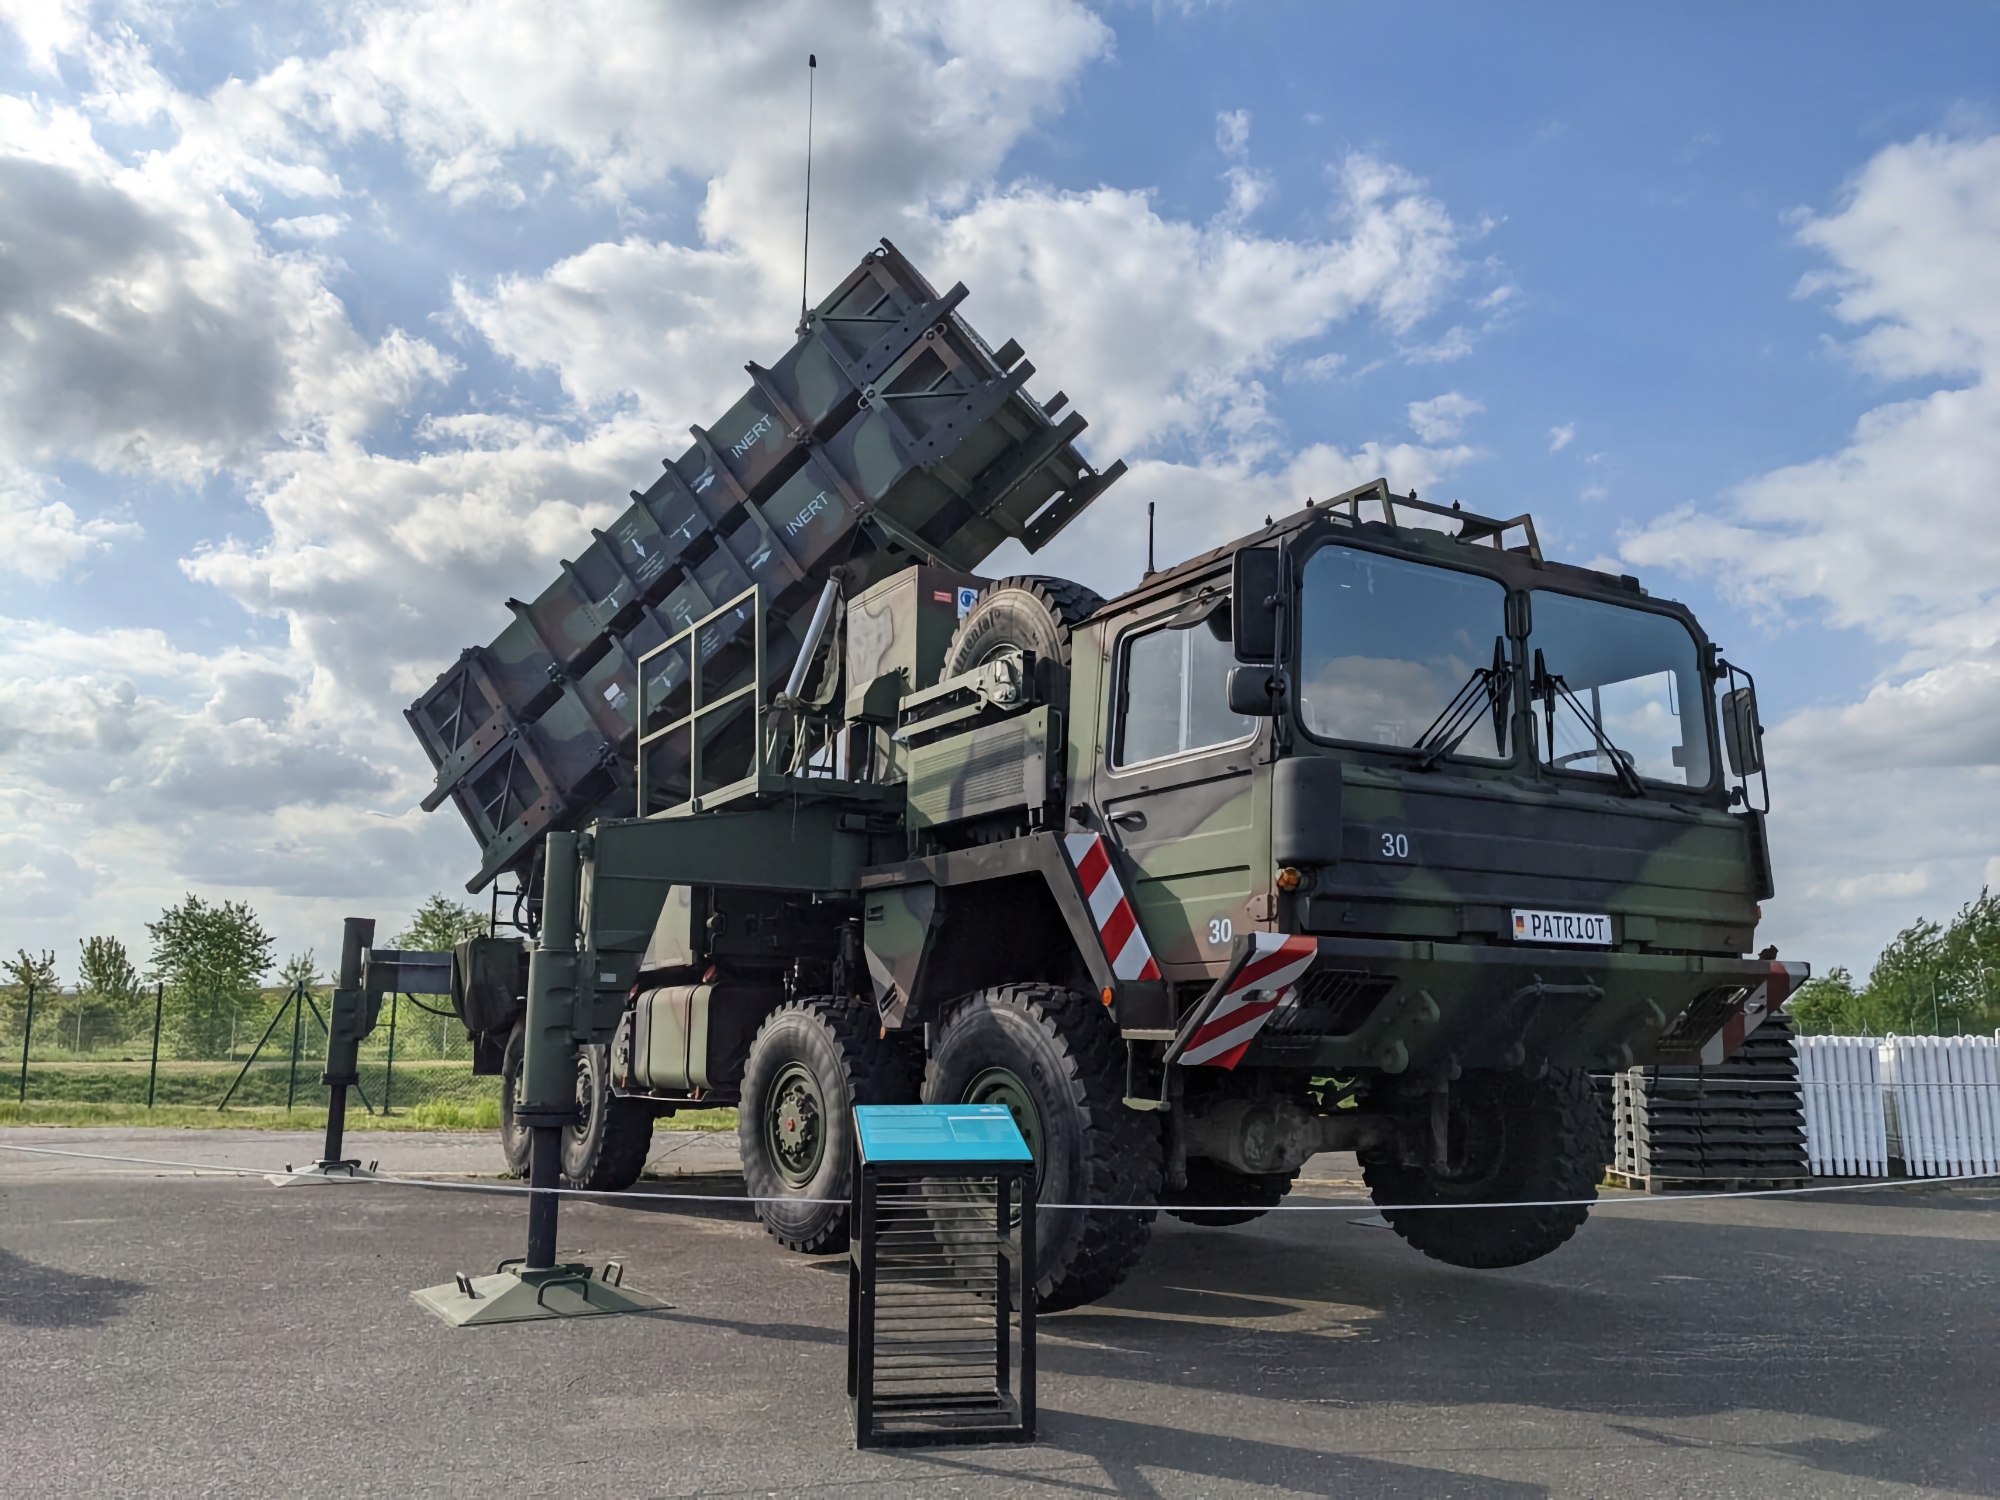 Duitsland draagt extra MIM-104 Patriot grond-luchtraketsysteem over aan Oekraïne